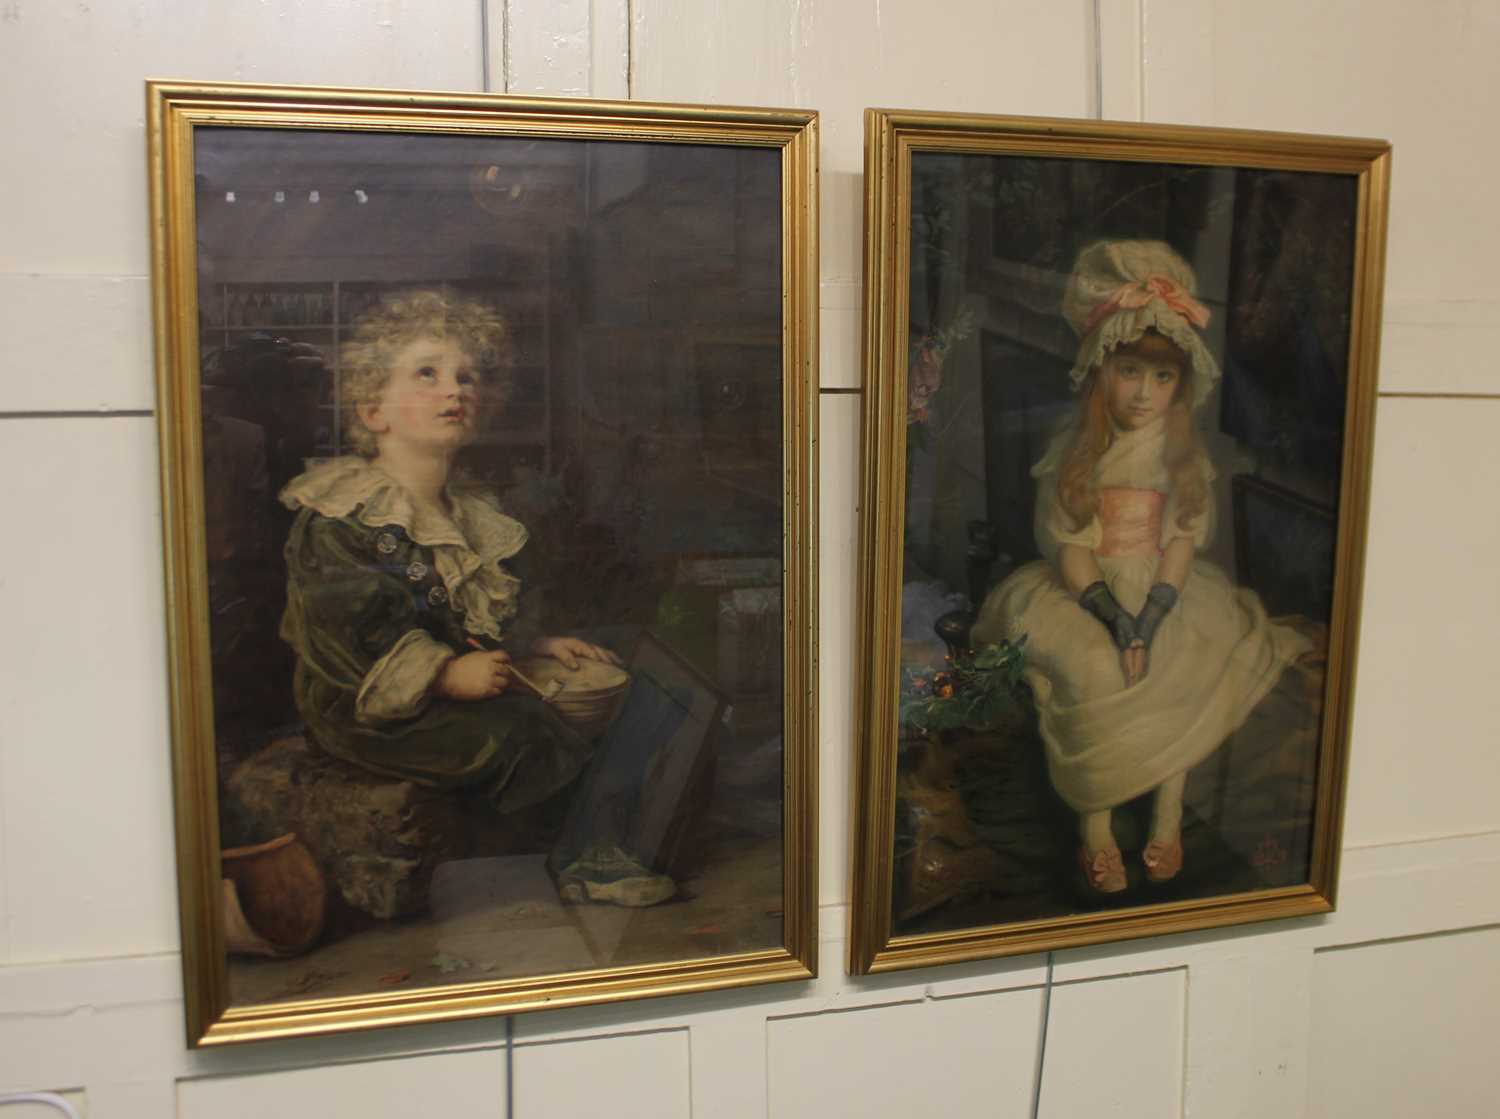 After John Everett Millais, 'Bubbles', colour print, 70cm by 47cm, and 'Cherry Ripe, colour print,